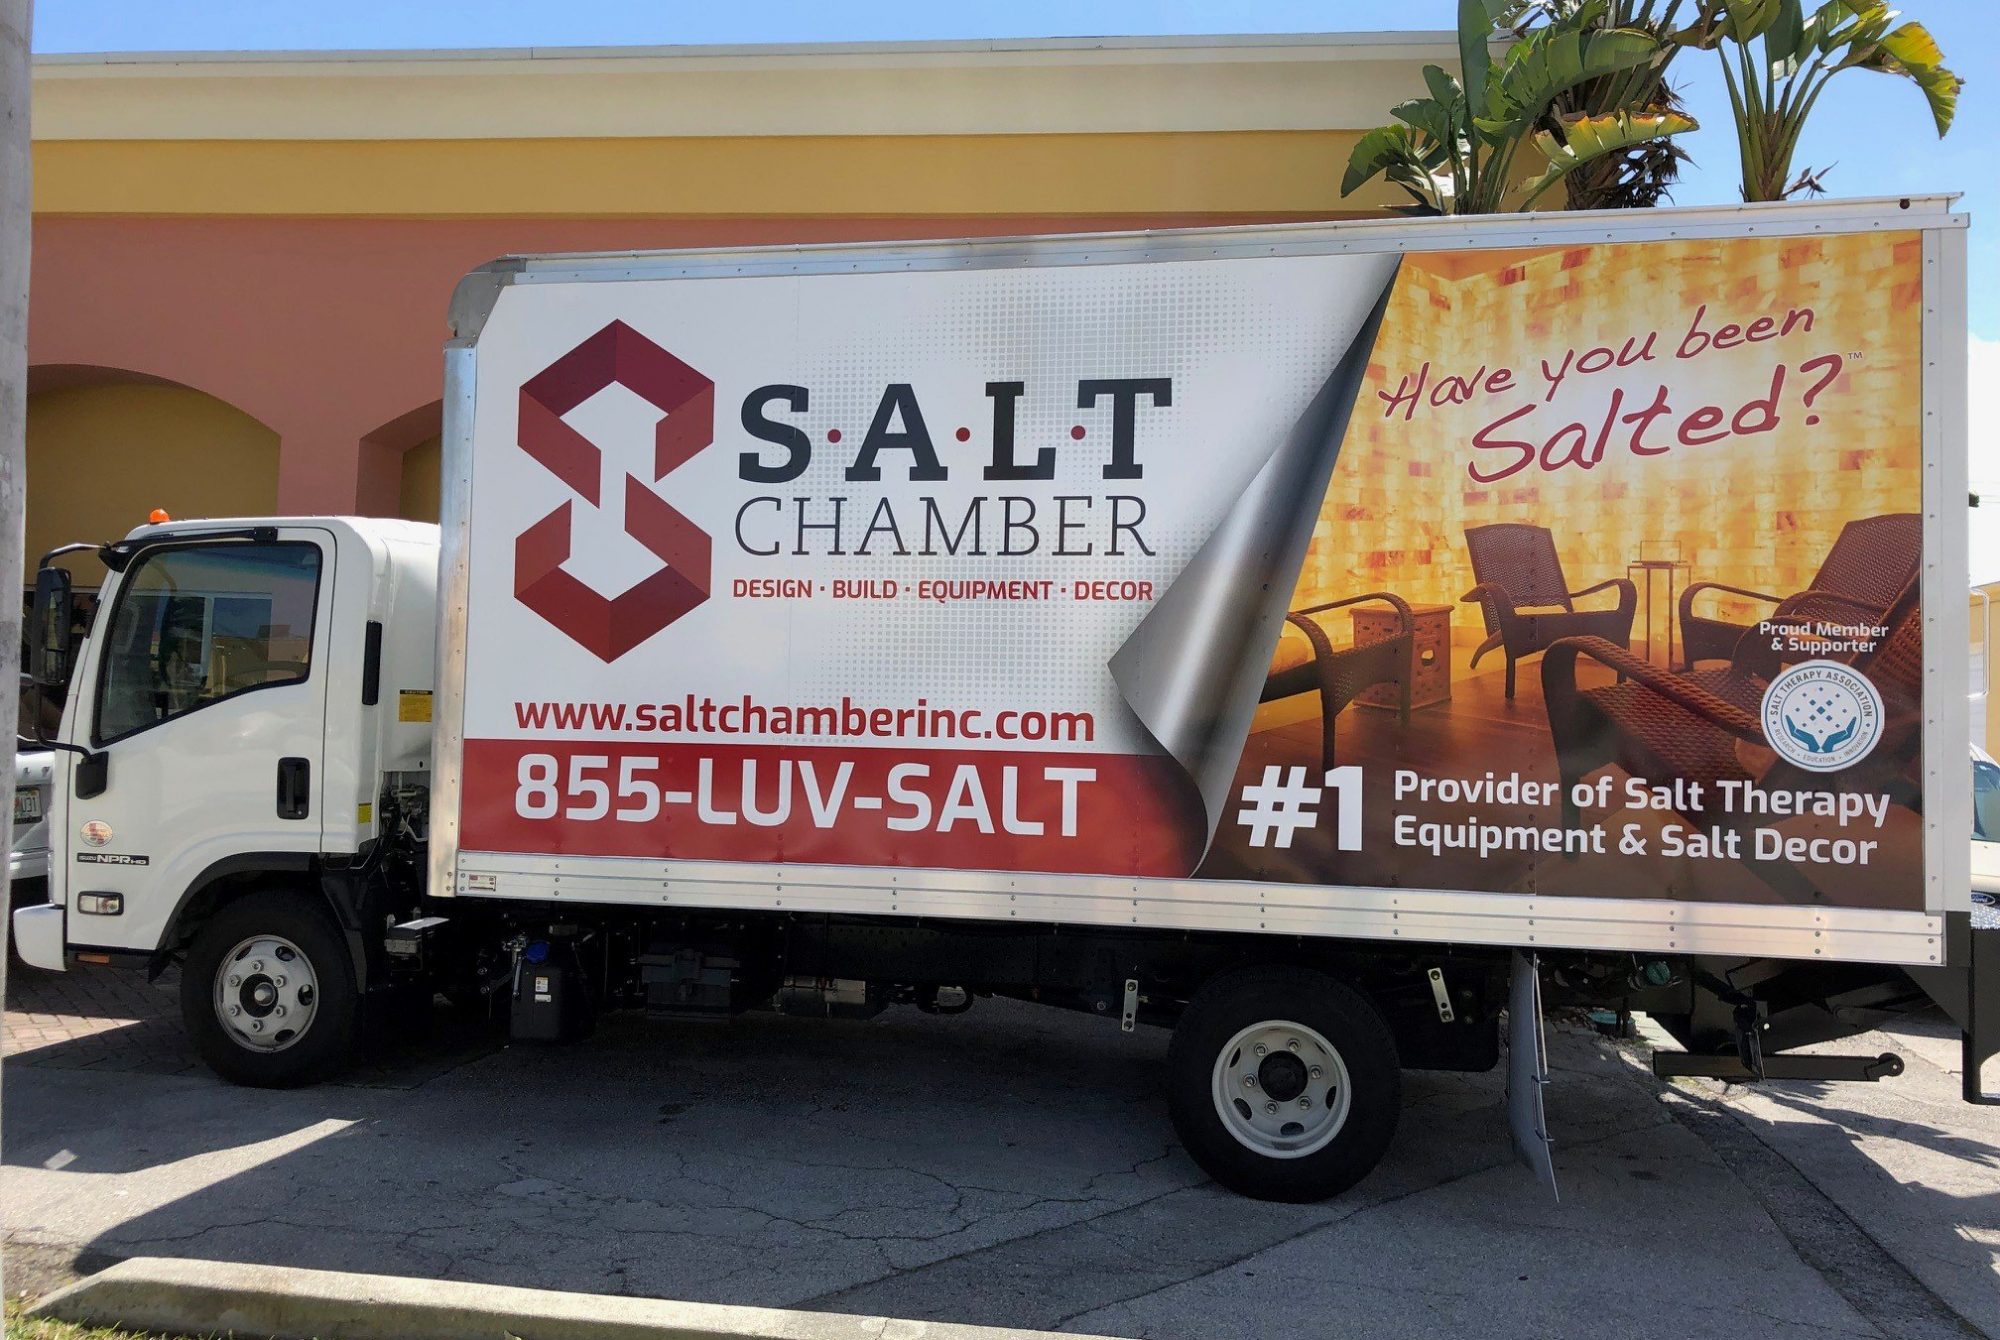 SALT Chamber Truck - side view